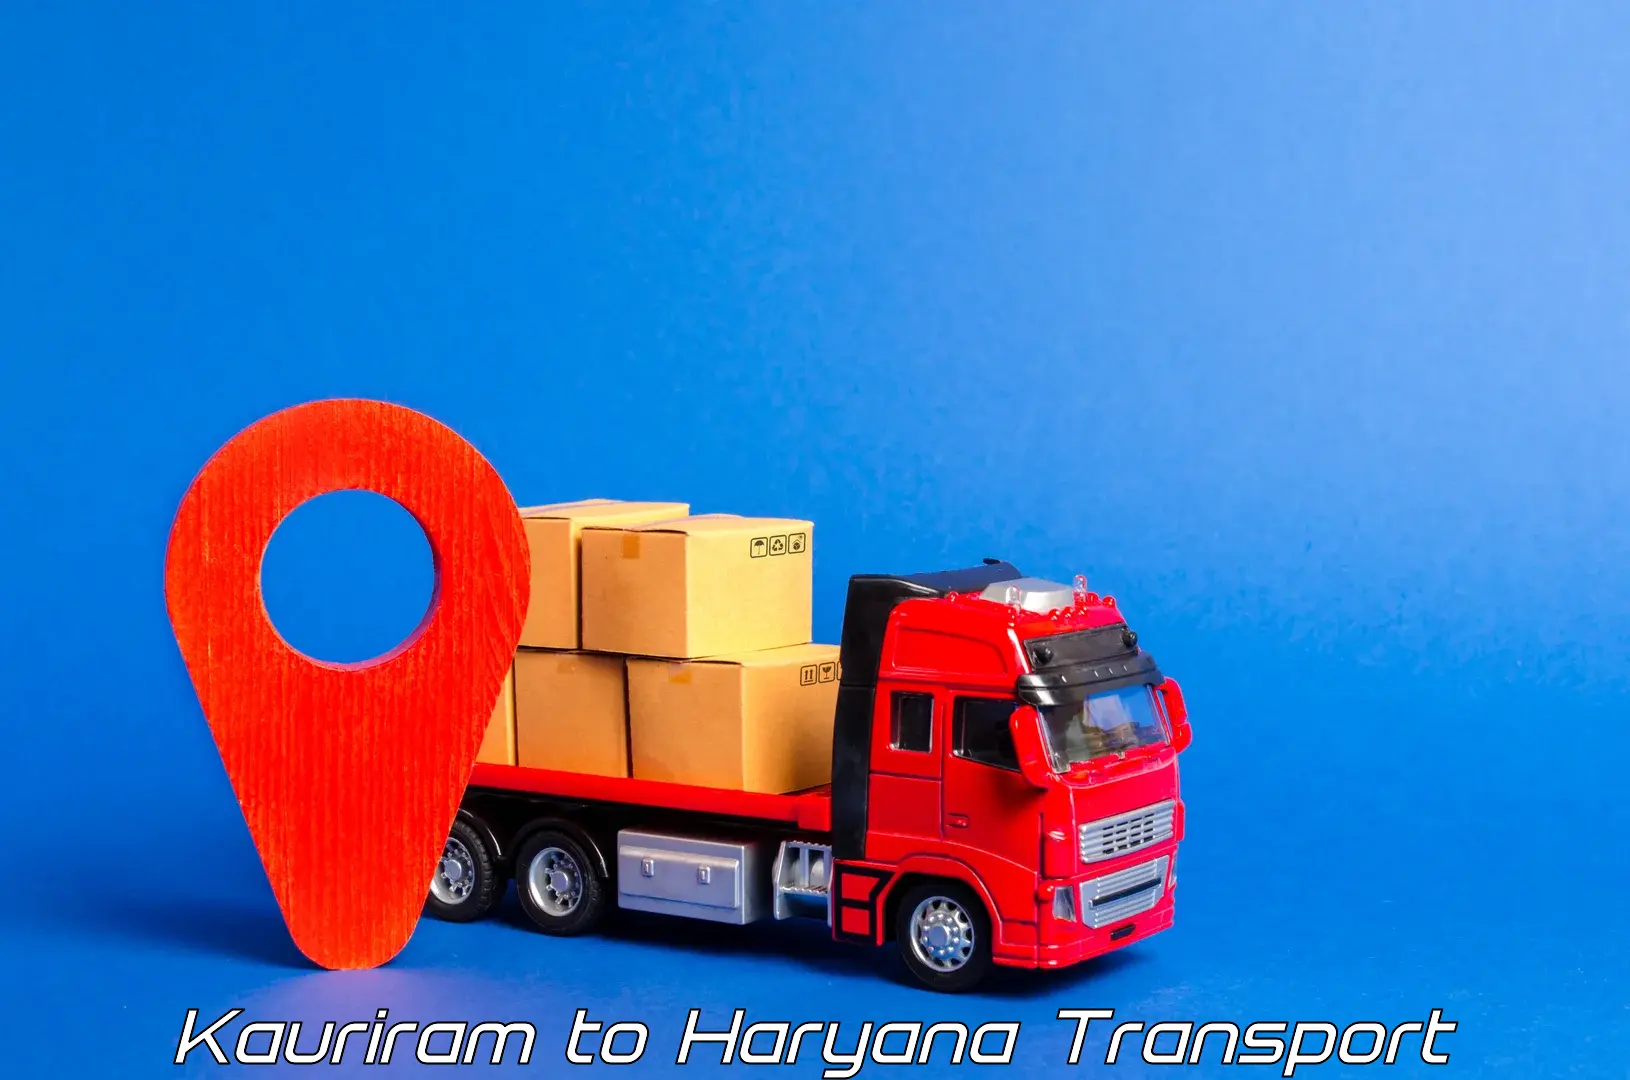 Shipping partner Kauriram to Bhiwani